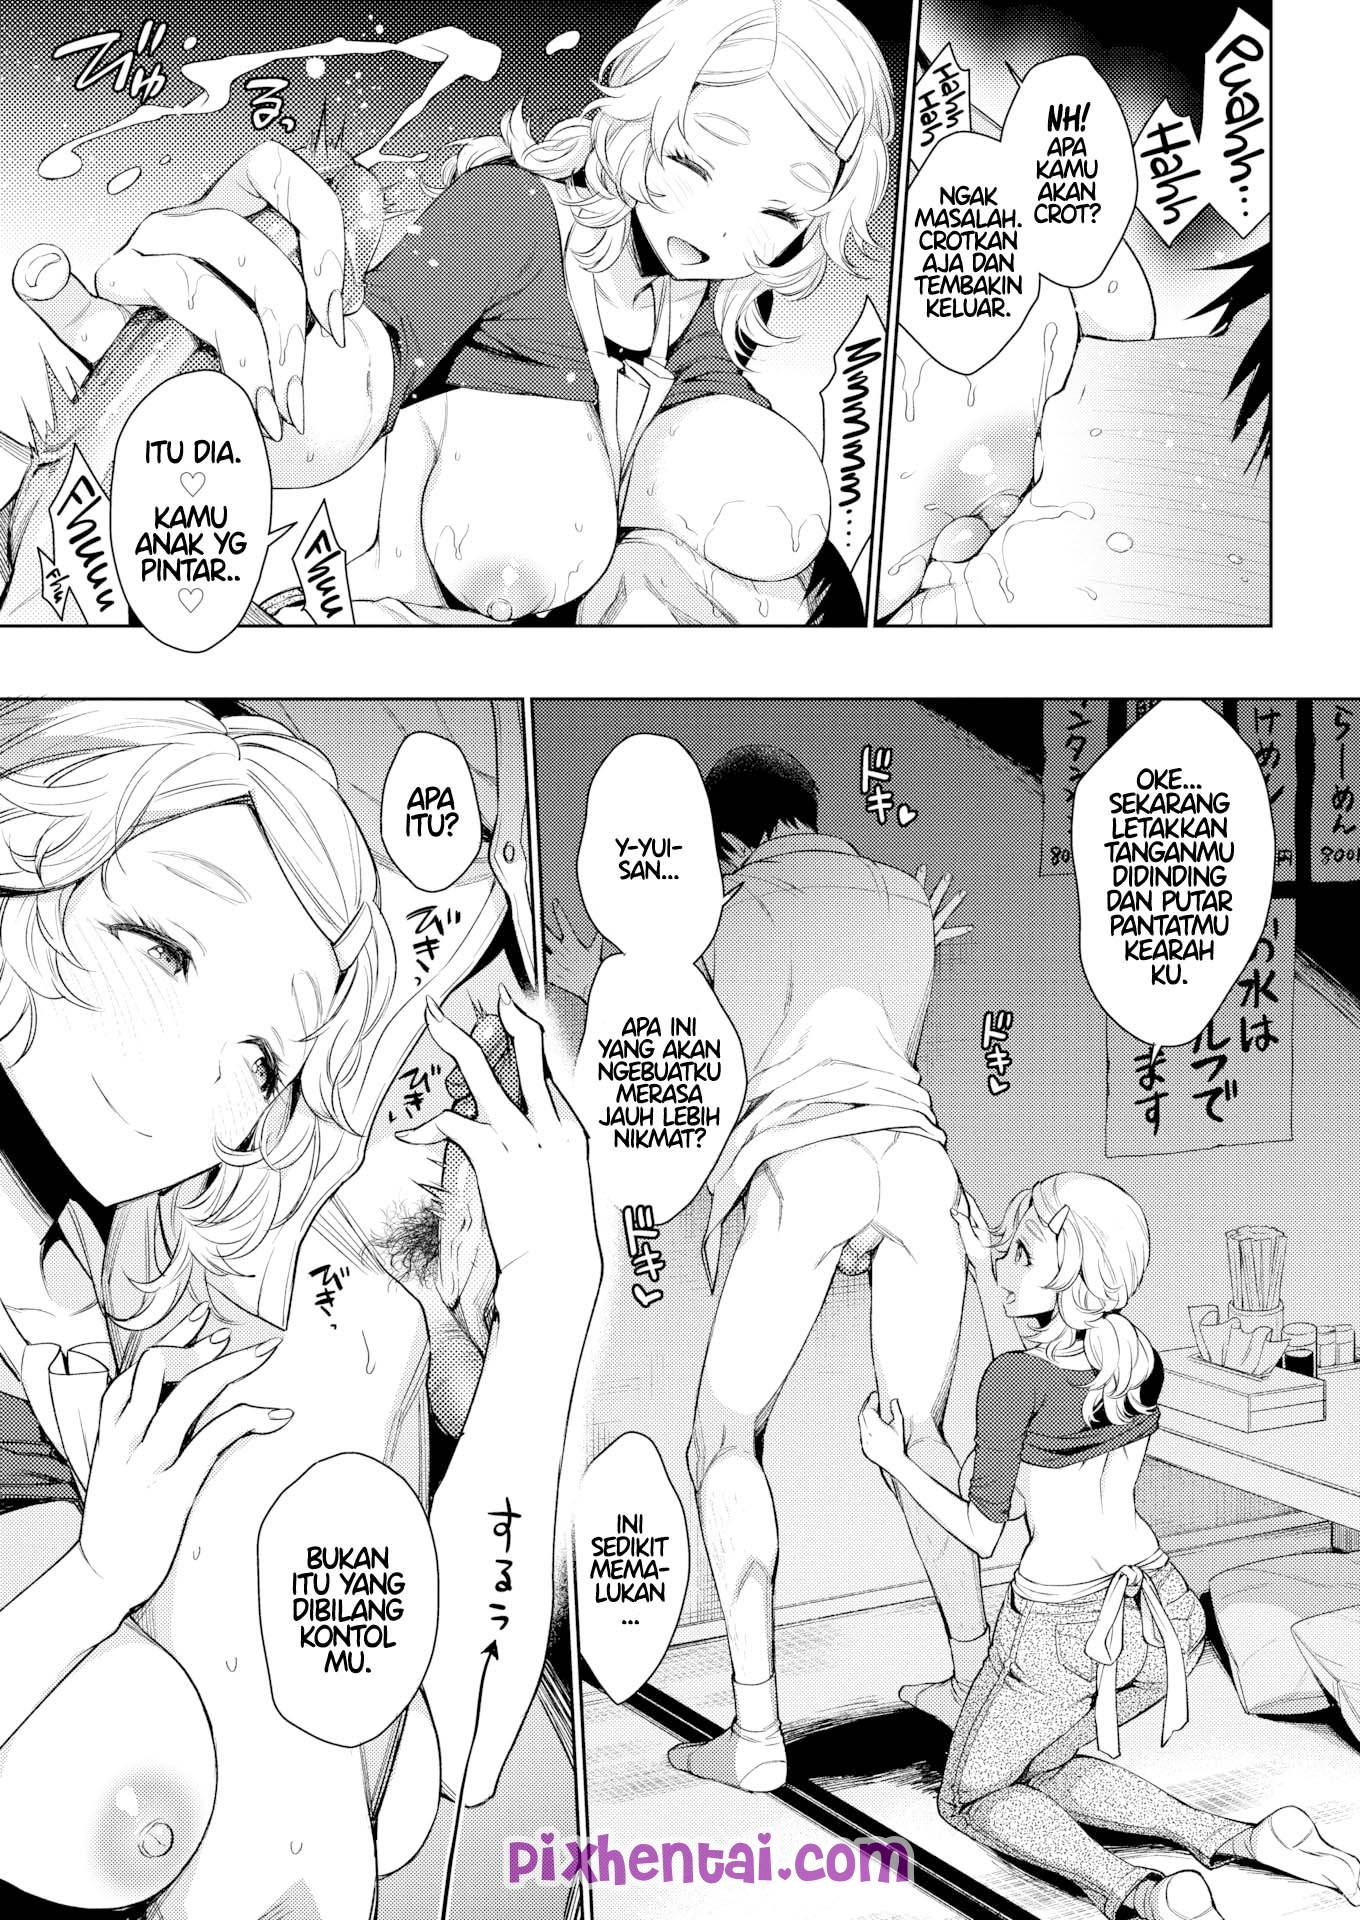 Komik hentai xxx manga sex bokep ngentot mbak semok pelayan di kedai ramen 07